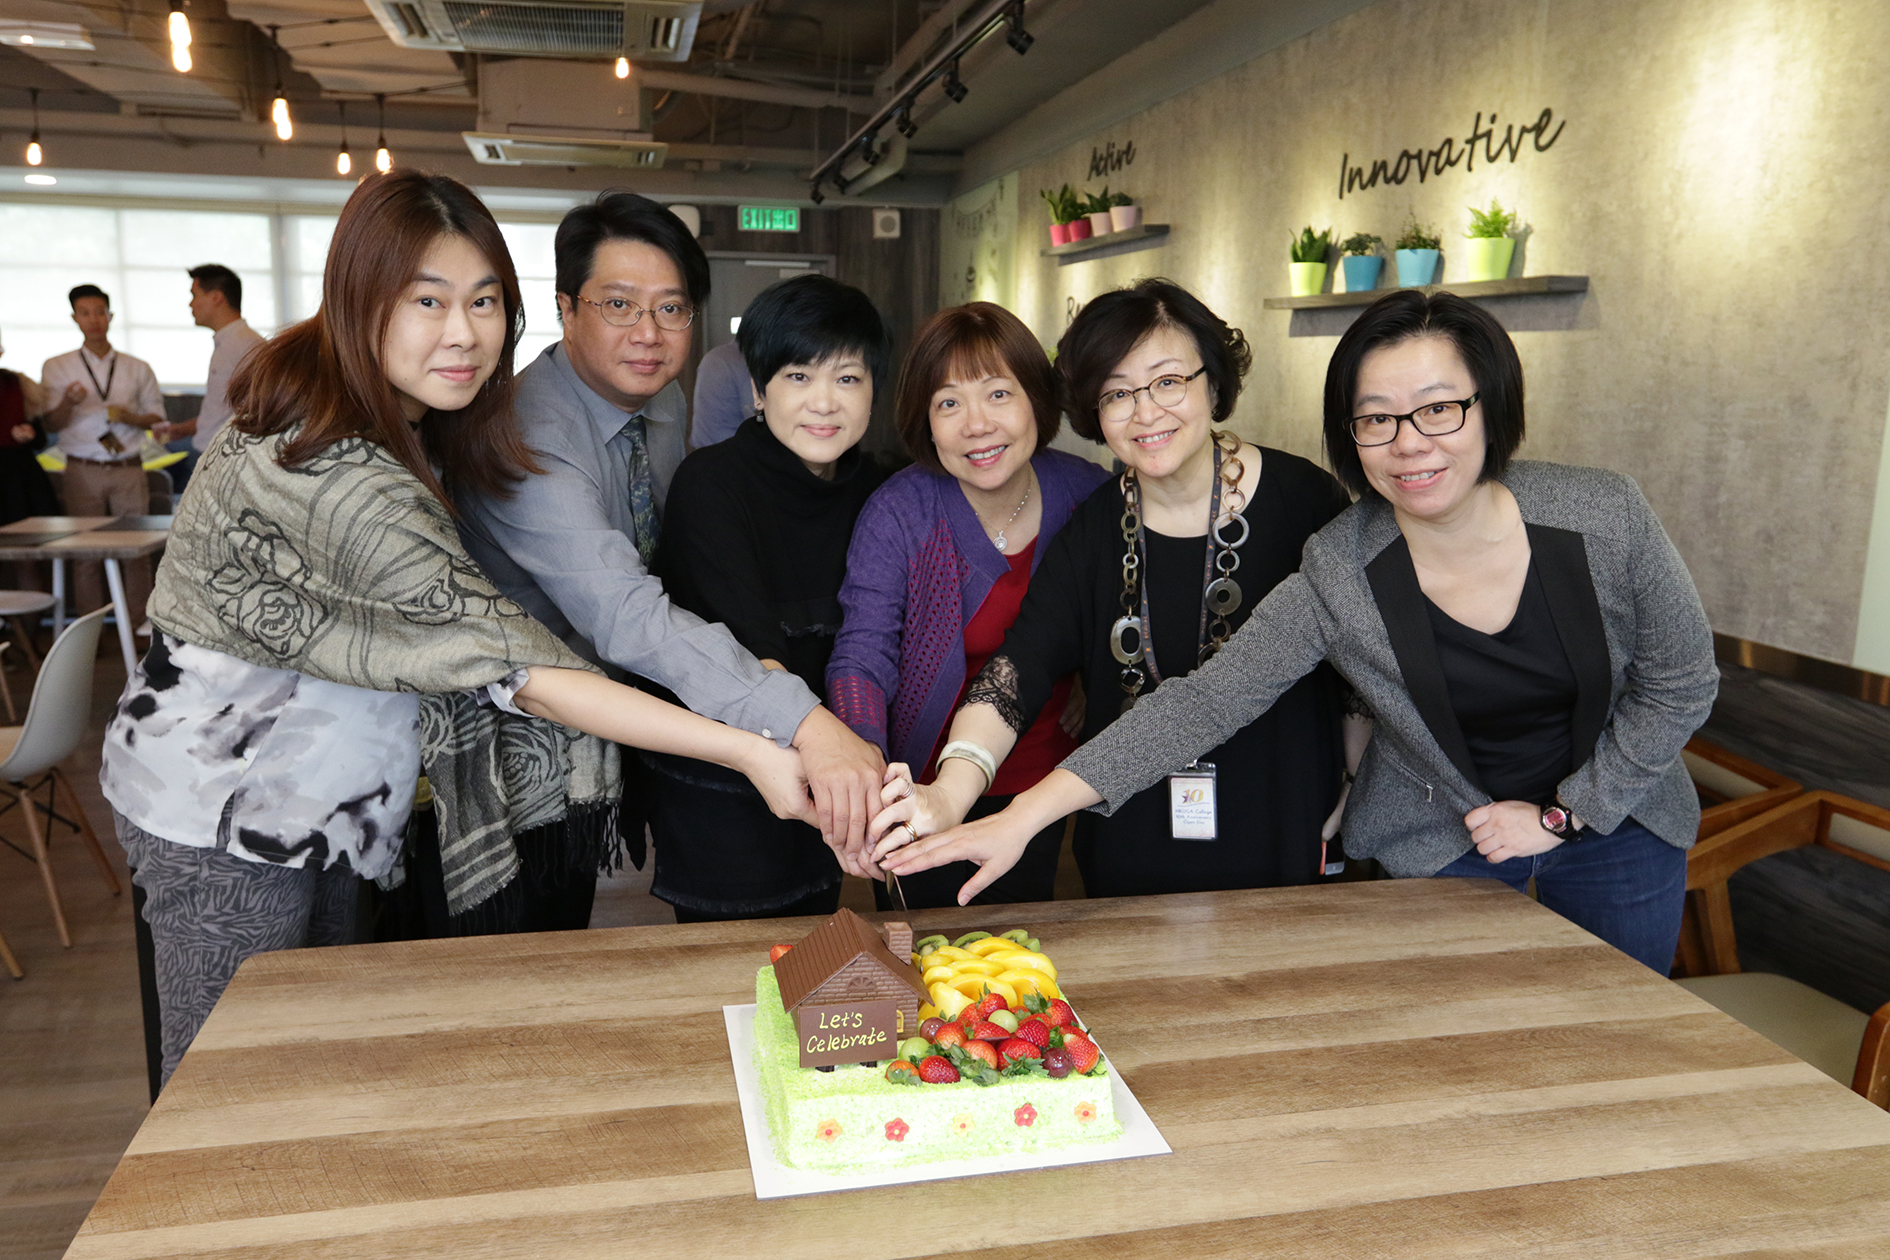 切蛋糕儀式：(左起) 羅麗冰女士、陳永昌副校長、周淑貞女士、林樊潔芳校監、陳韾校長、林碧恩女士。